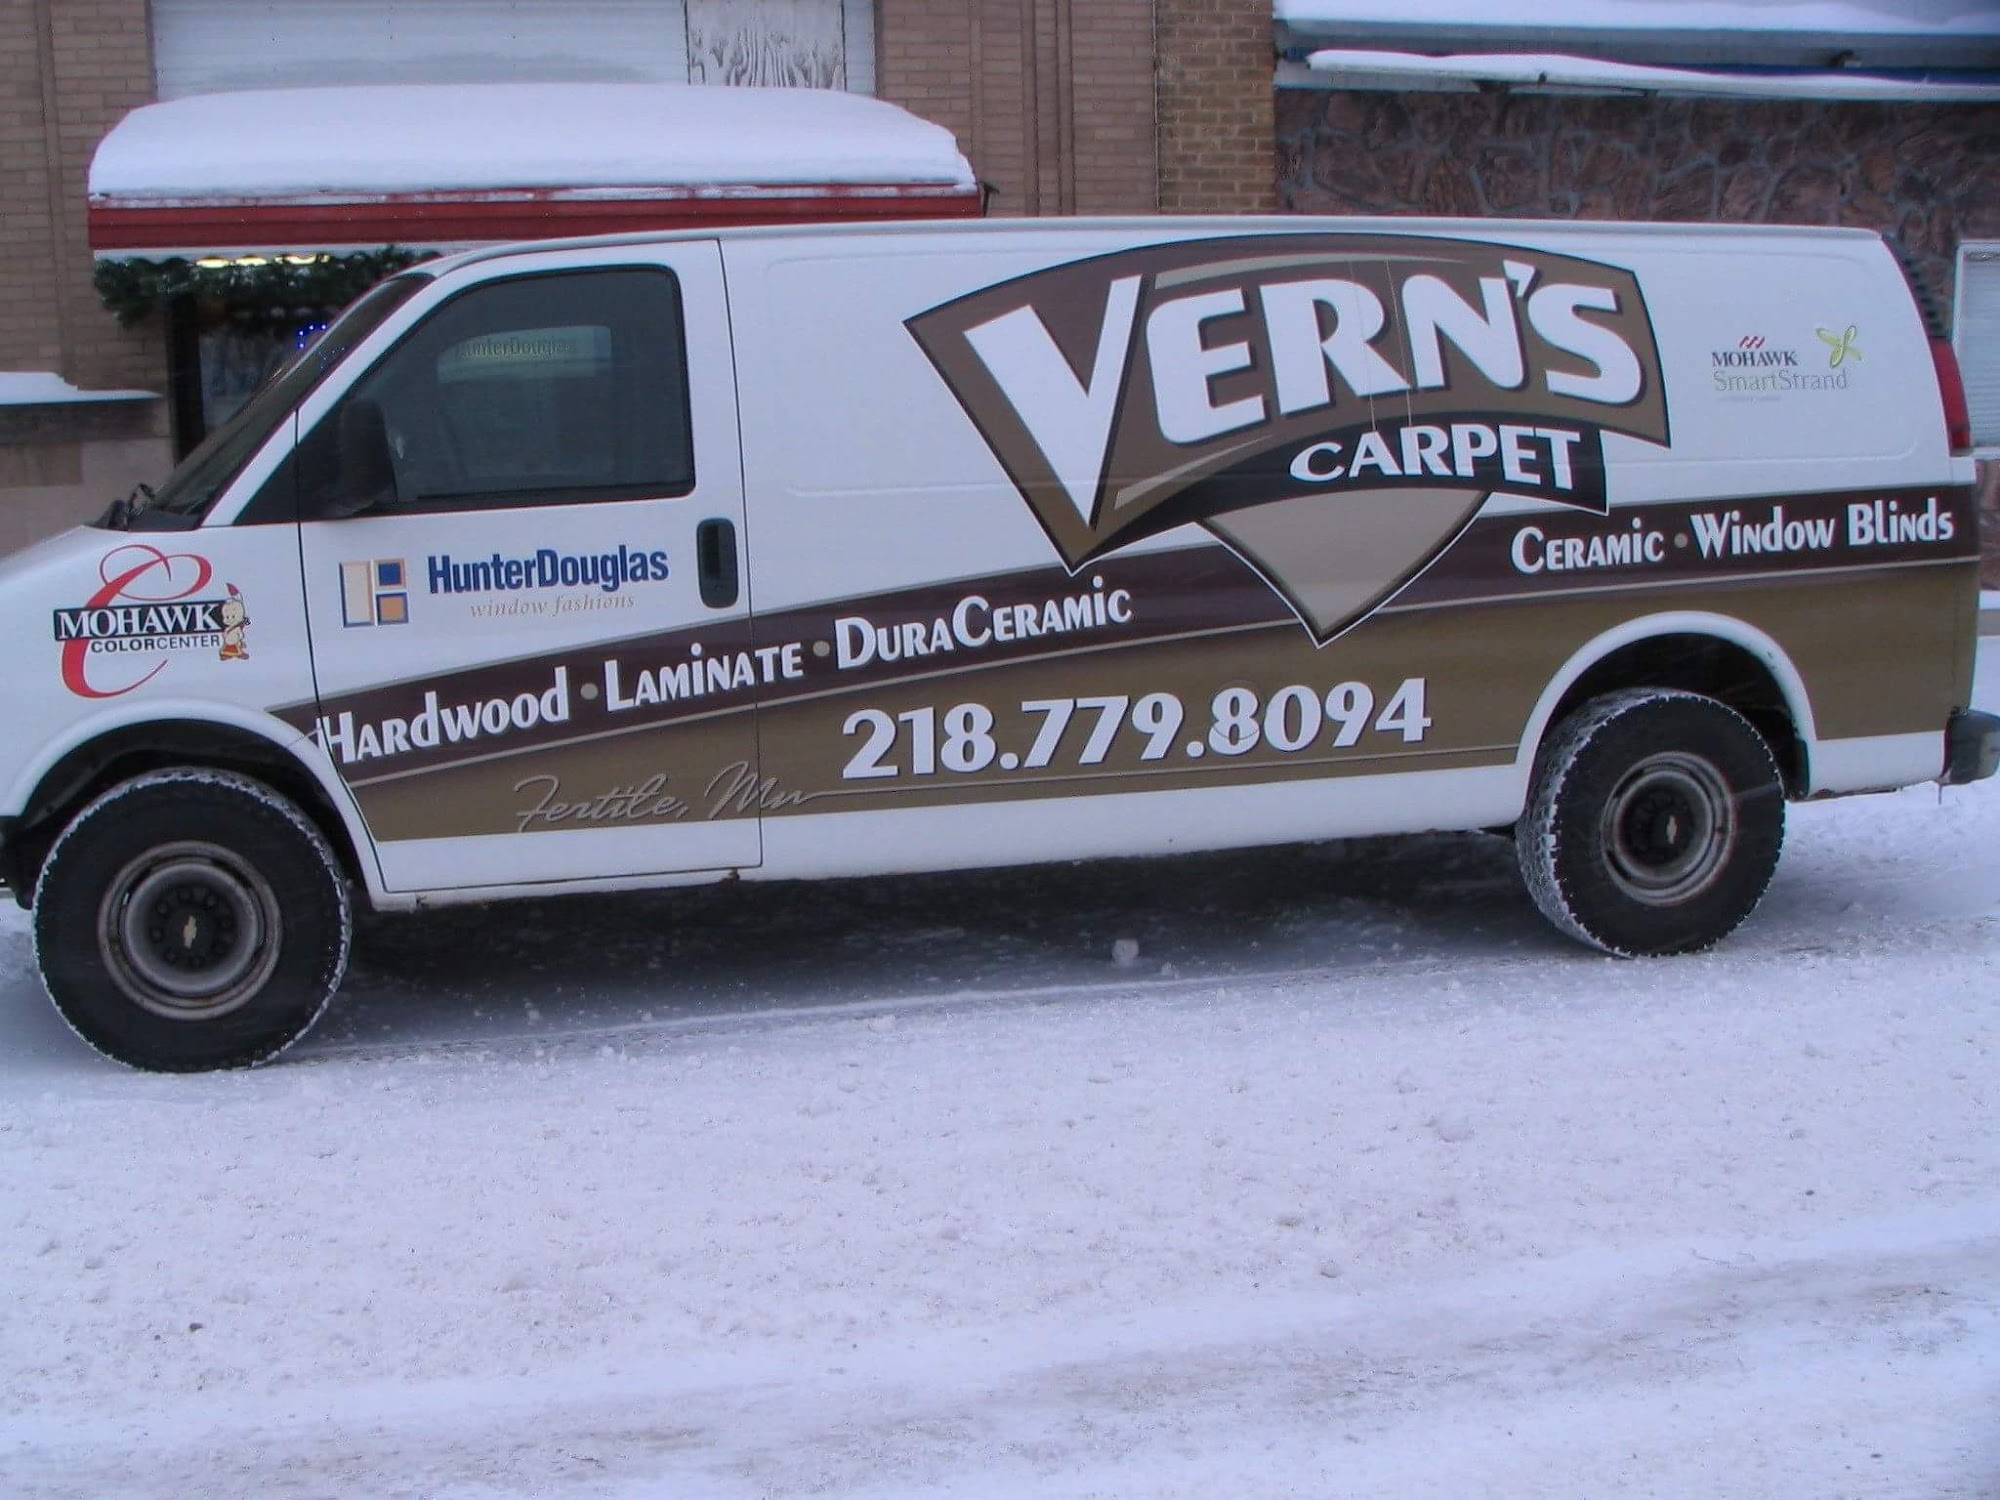 Vern's Carpet 202 N Mill St, Fertile Minnesota 56540